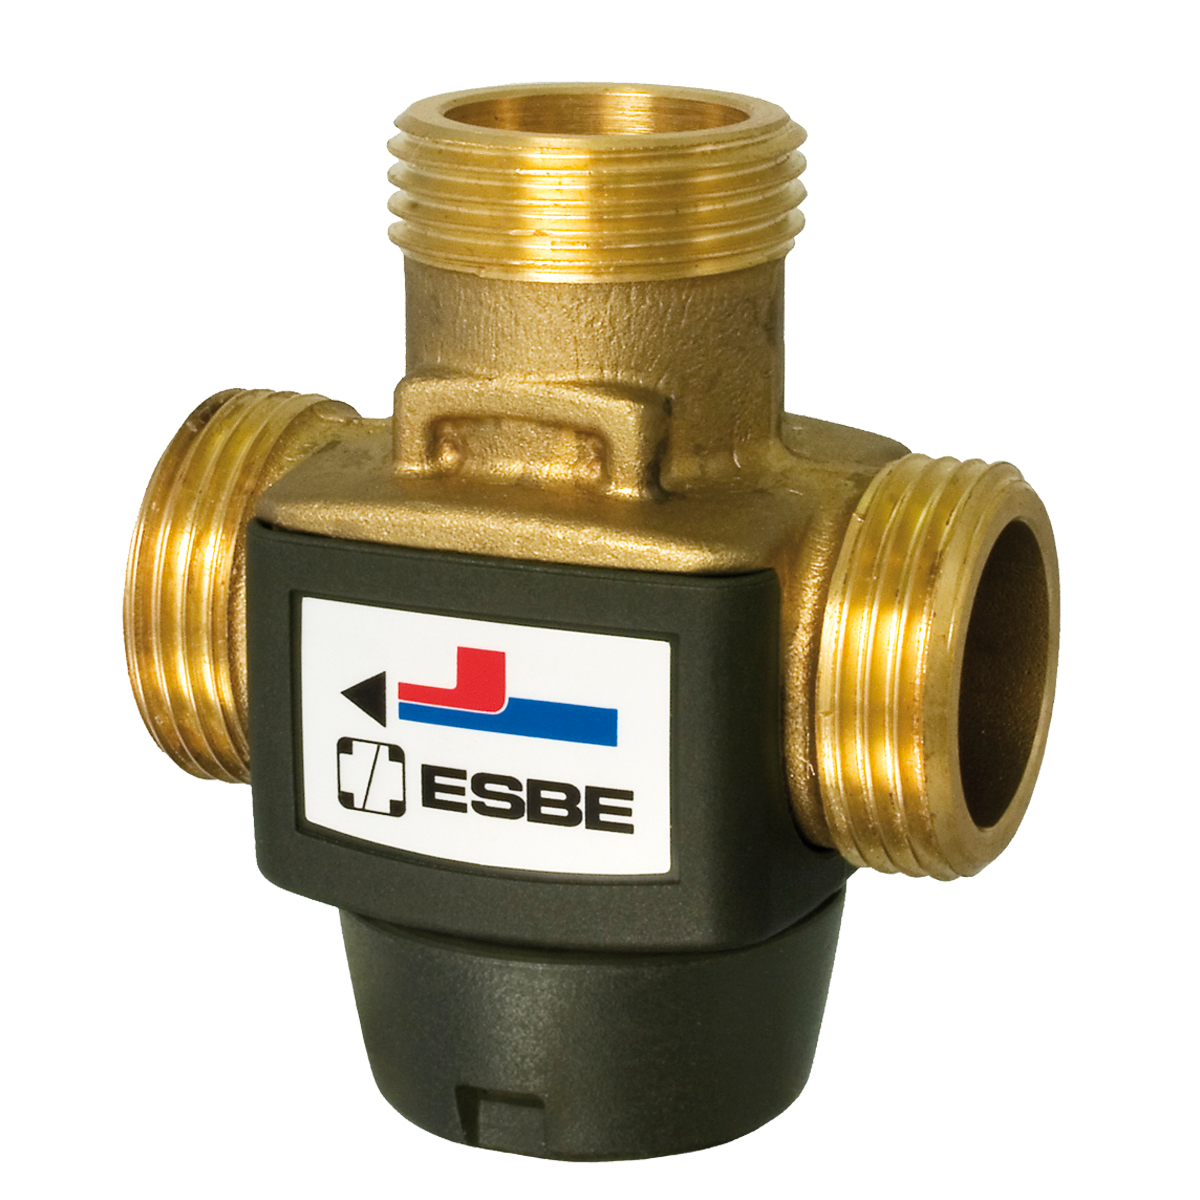 Esbe VTC312 termostatblandare för uppvärmning av vatten 55 ° C, 1